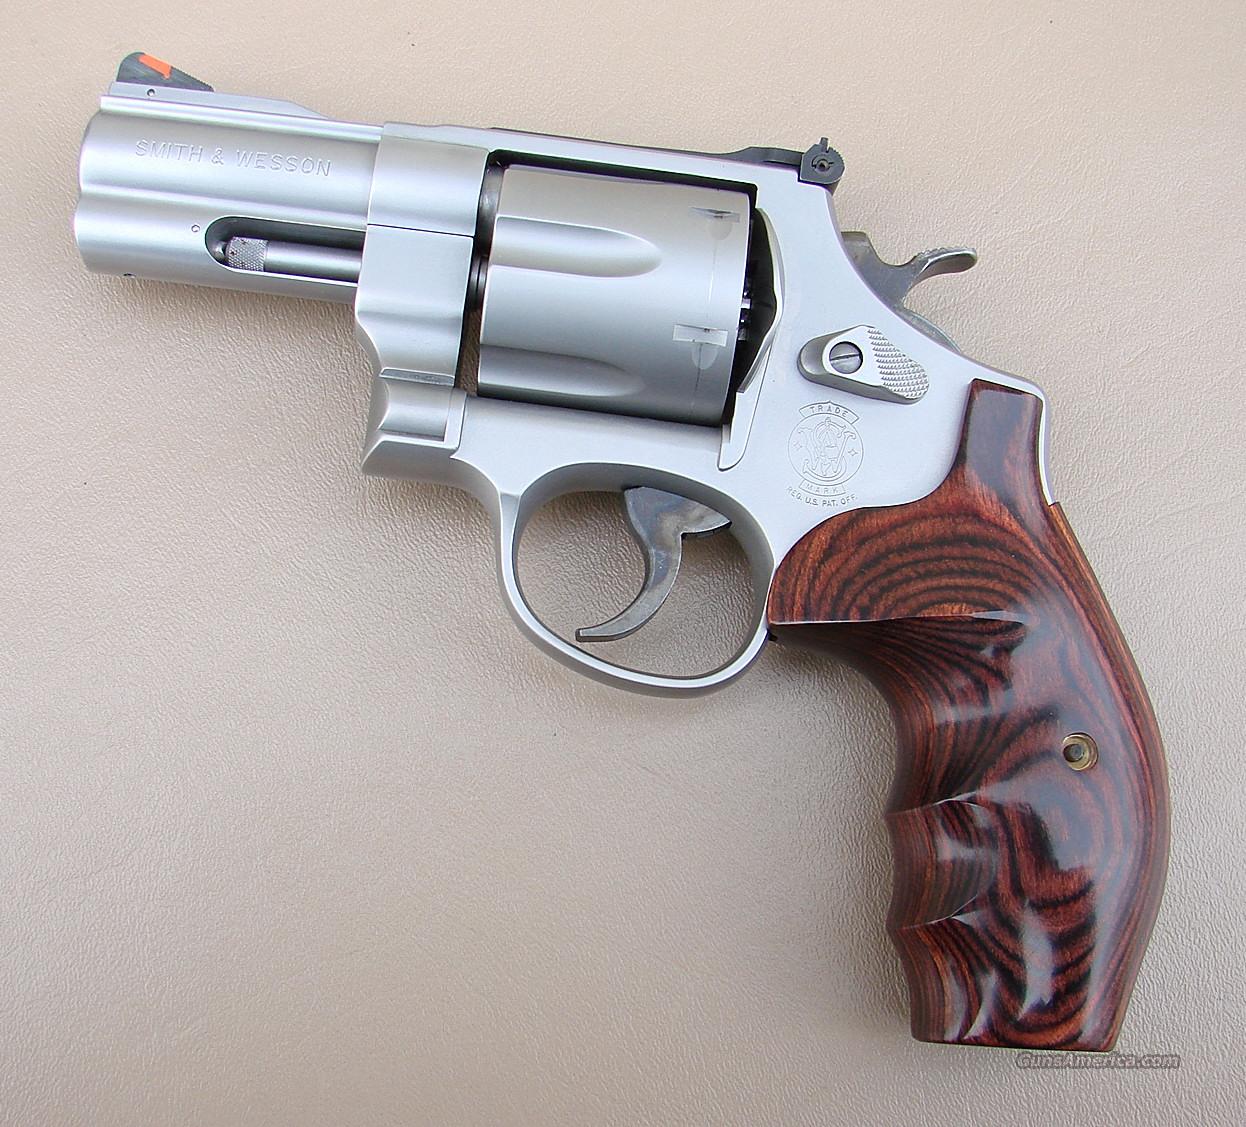 Smith & Wesson Model 657 41 Magnum ... for sale at Gunsamerica.com ...